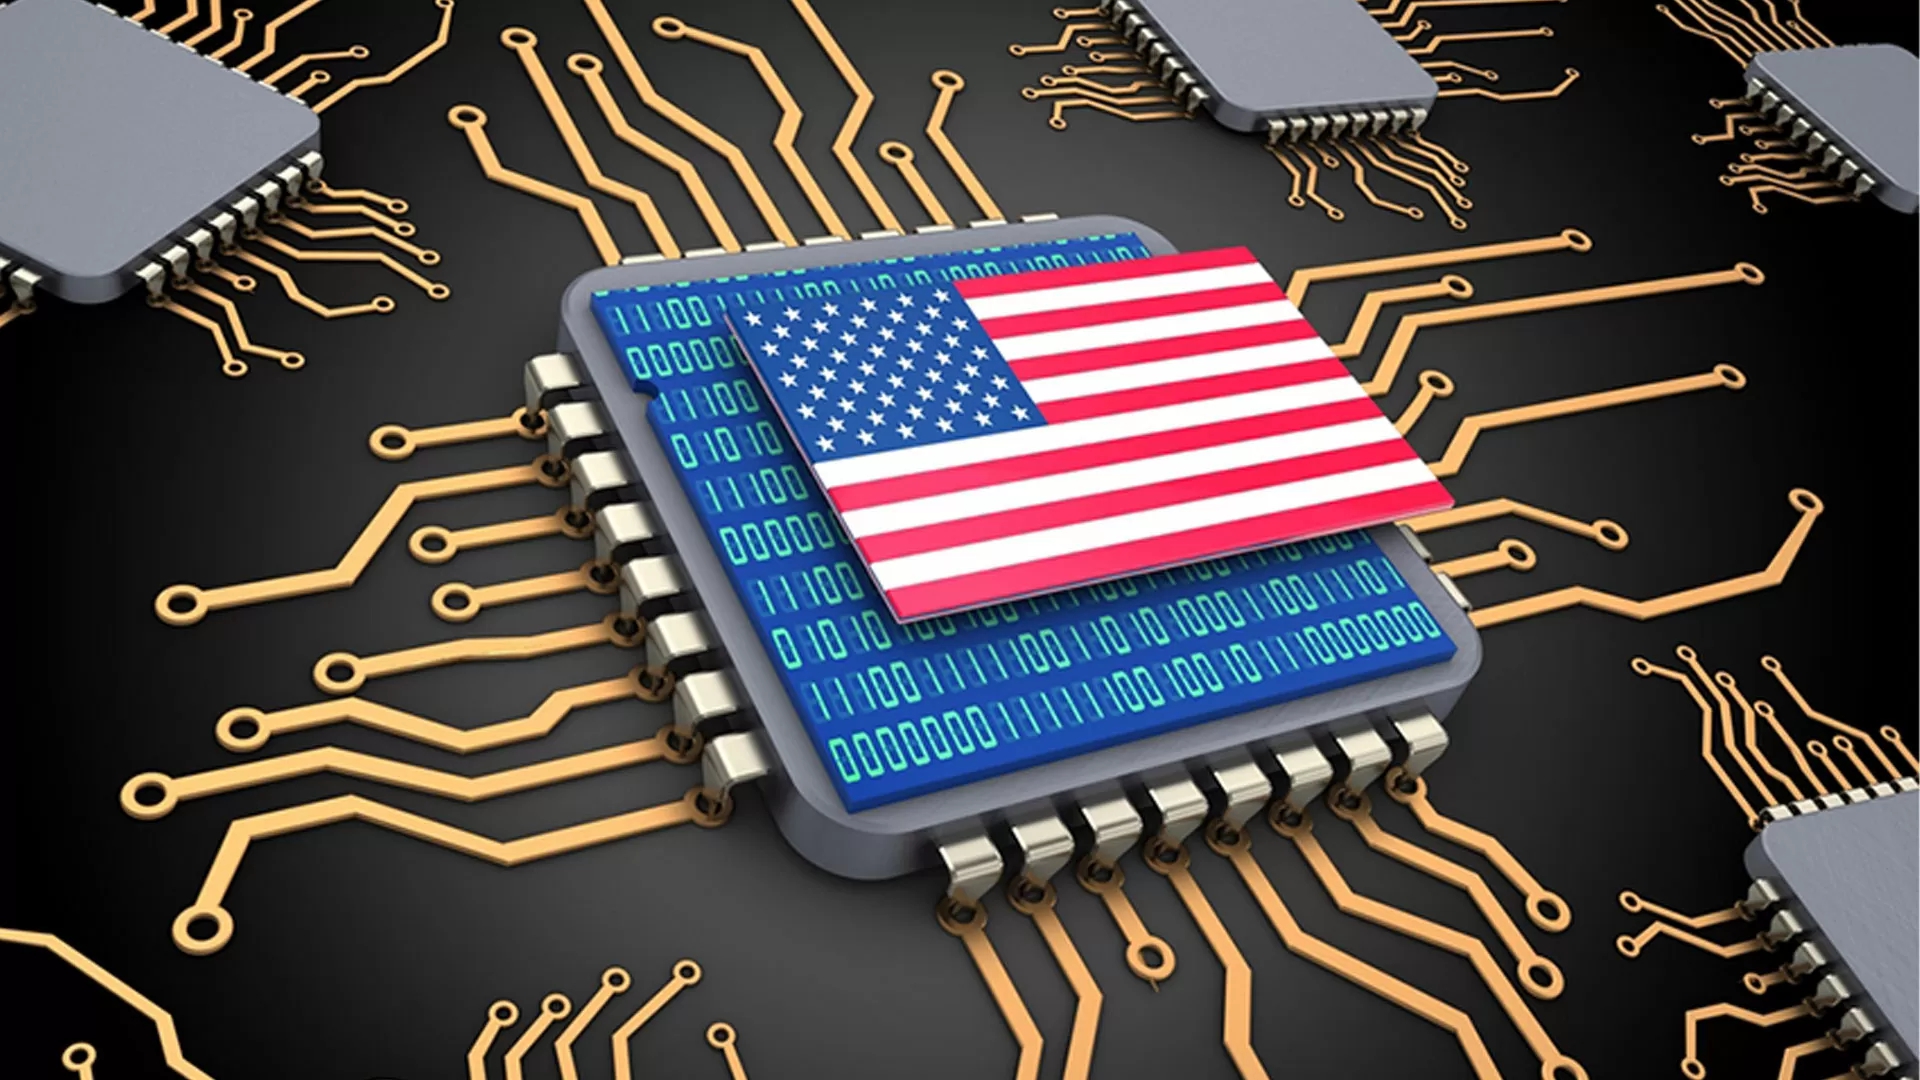 Mỹ muốn xây dựng ít nhất 2 cụm nhà máy chip tiên tiến giữa bối cảnh khủng hoảng địa chính trị